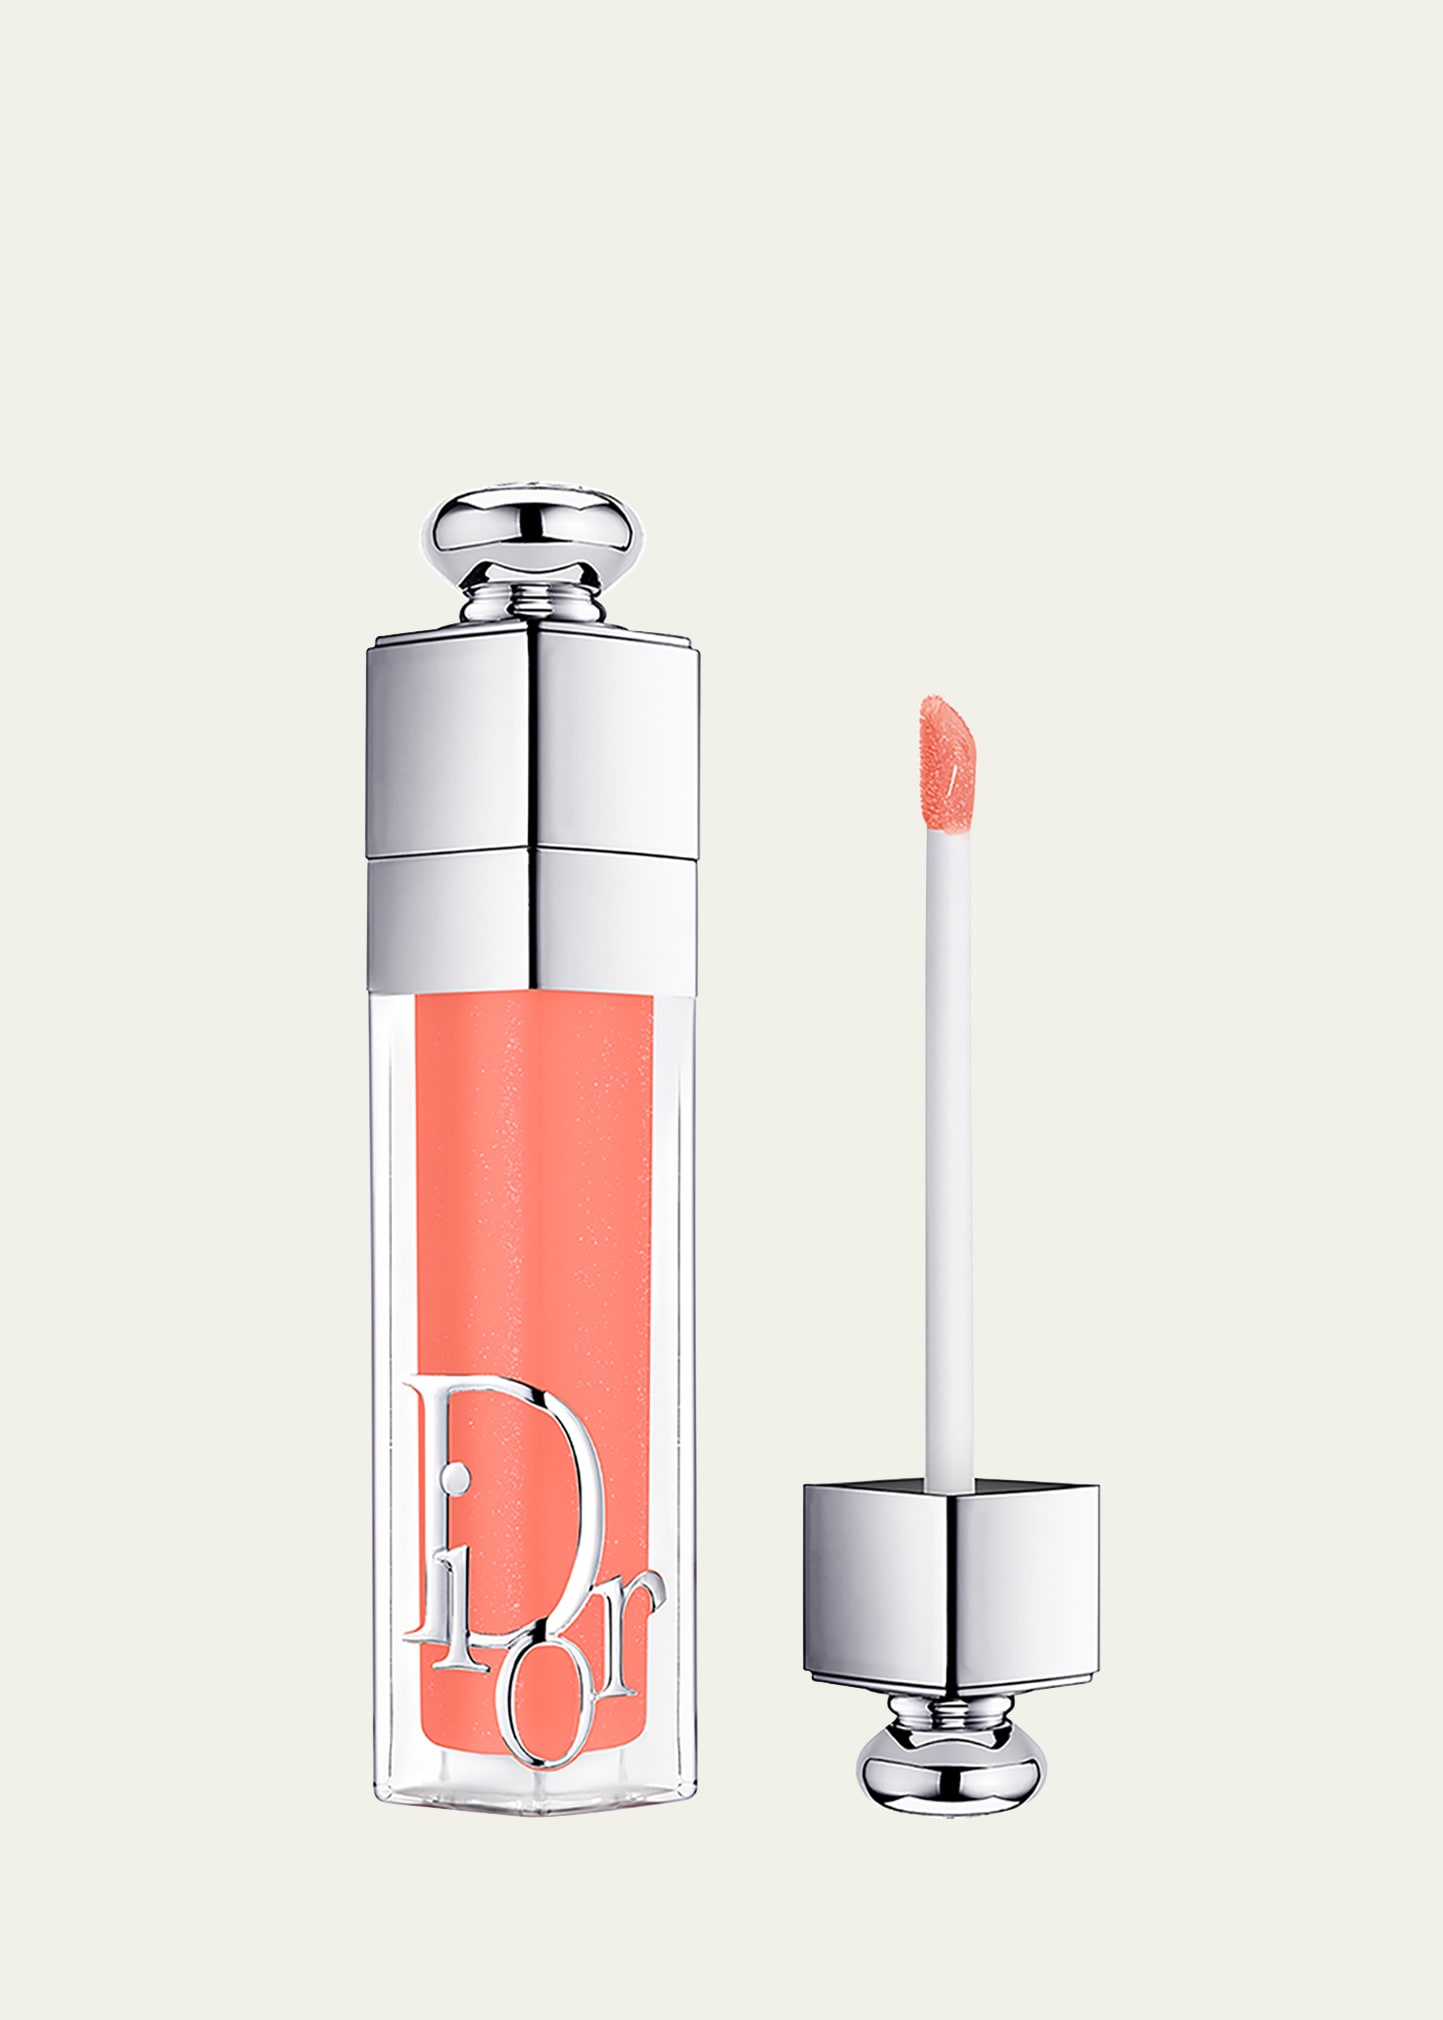 Dior Addict Lip Maximizer Gloss In Multi